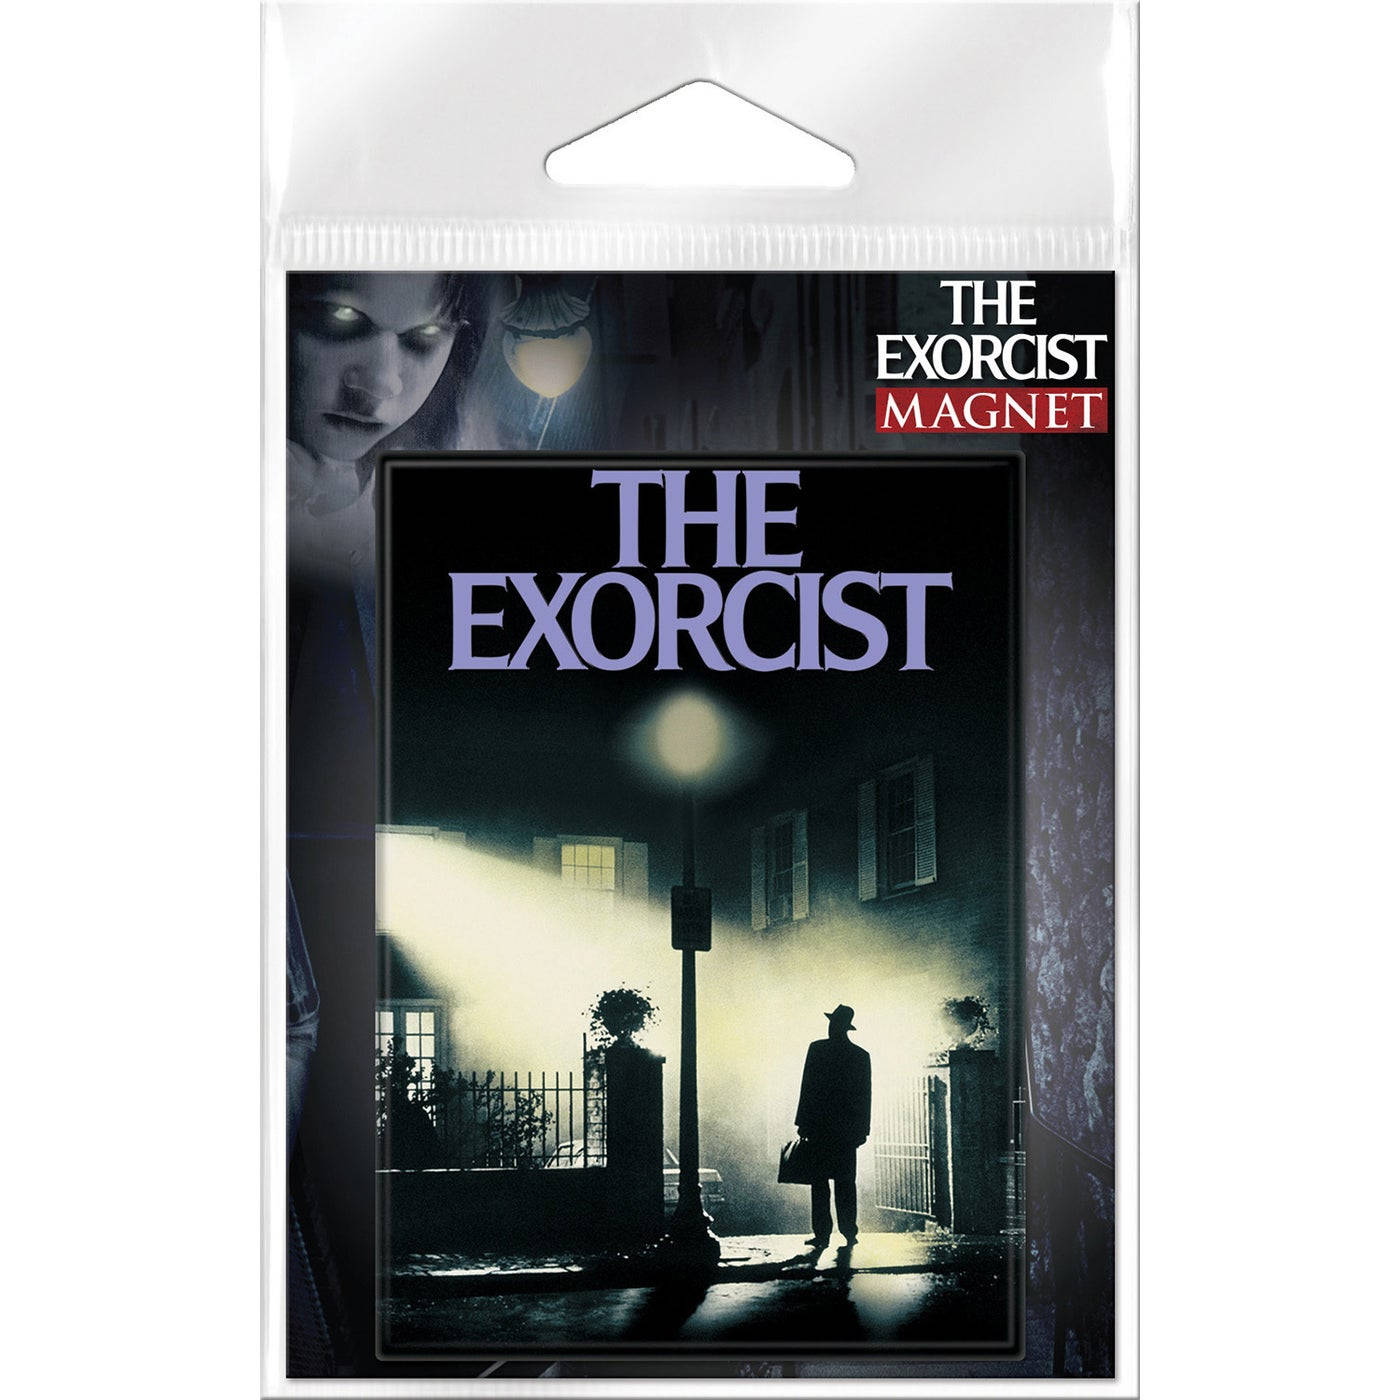 Den Exorcist Magnet Plakat Wallpaper